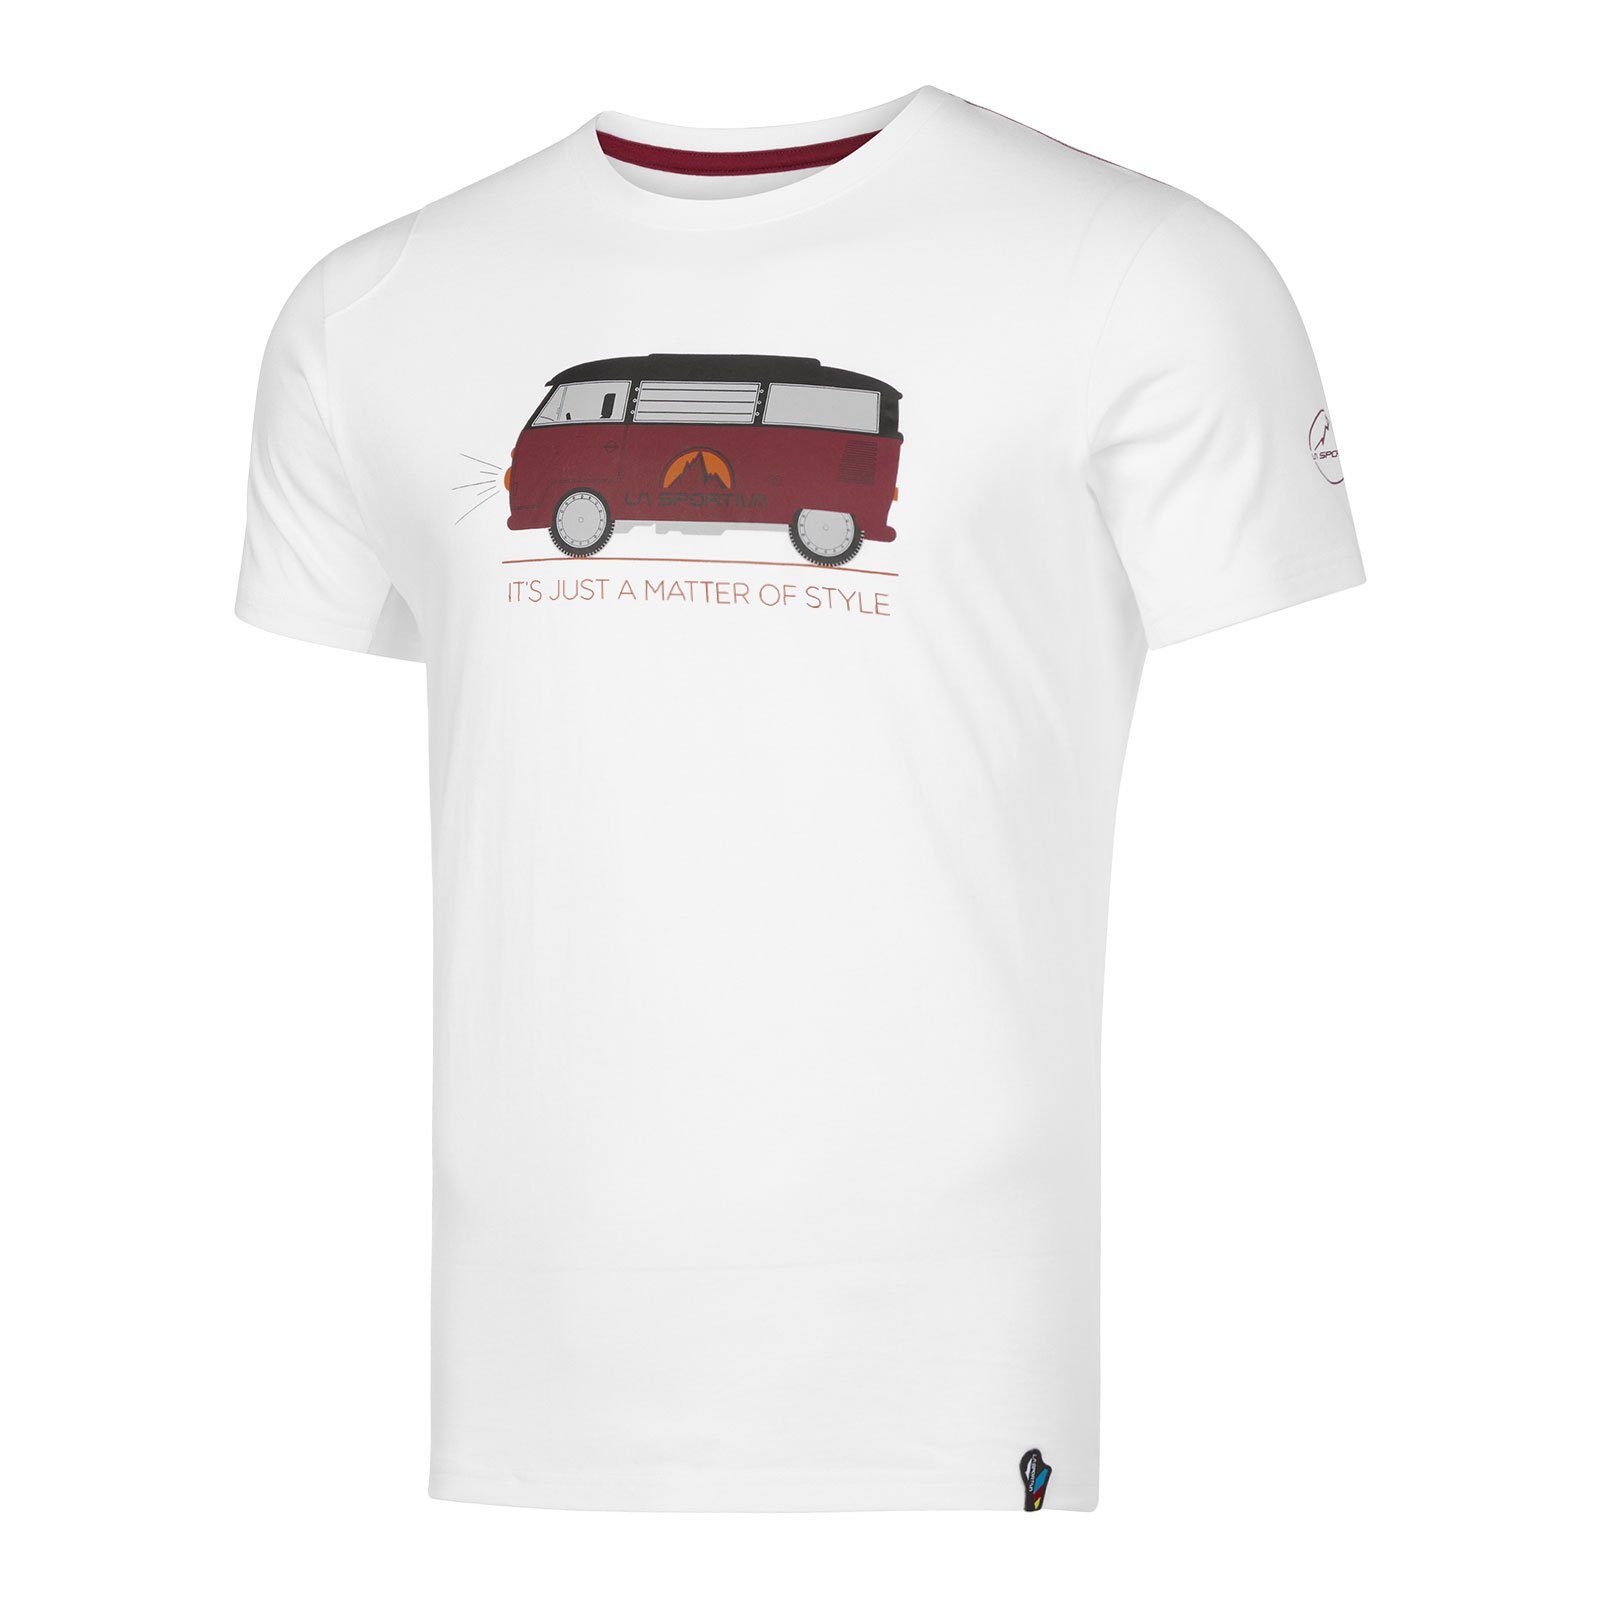 La Sportiva T-Shirt Van M Baumwolle / white sangria aus organischer 000320 100